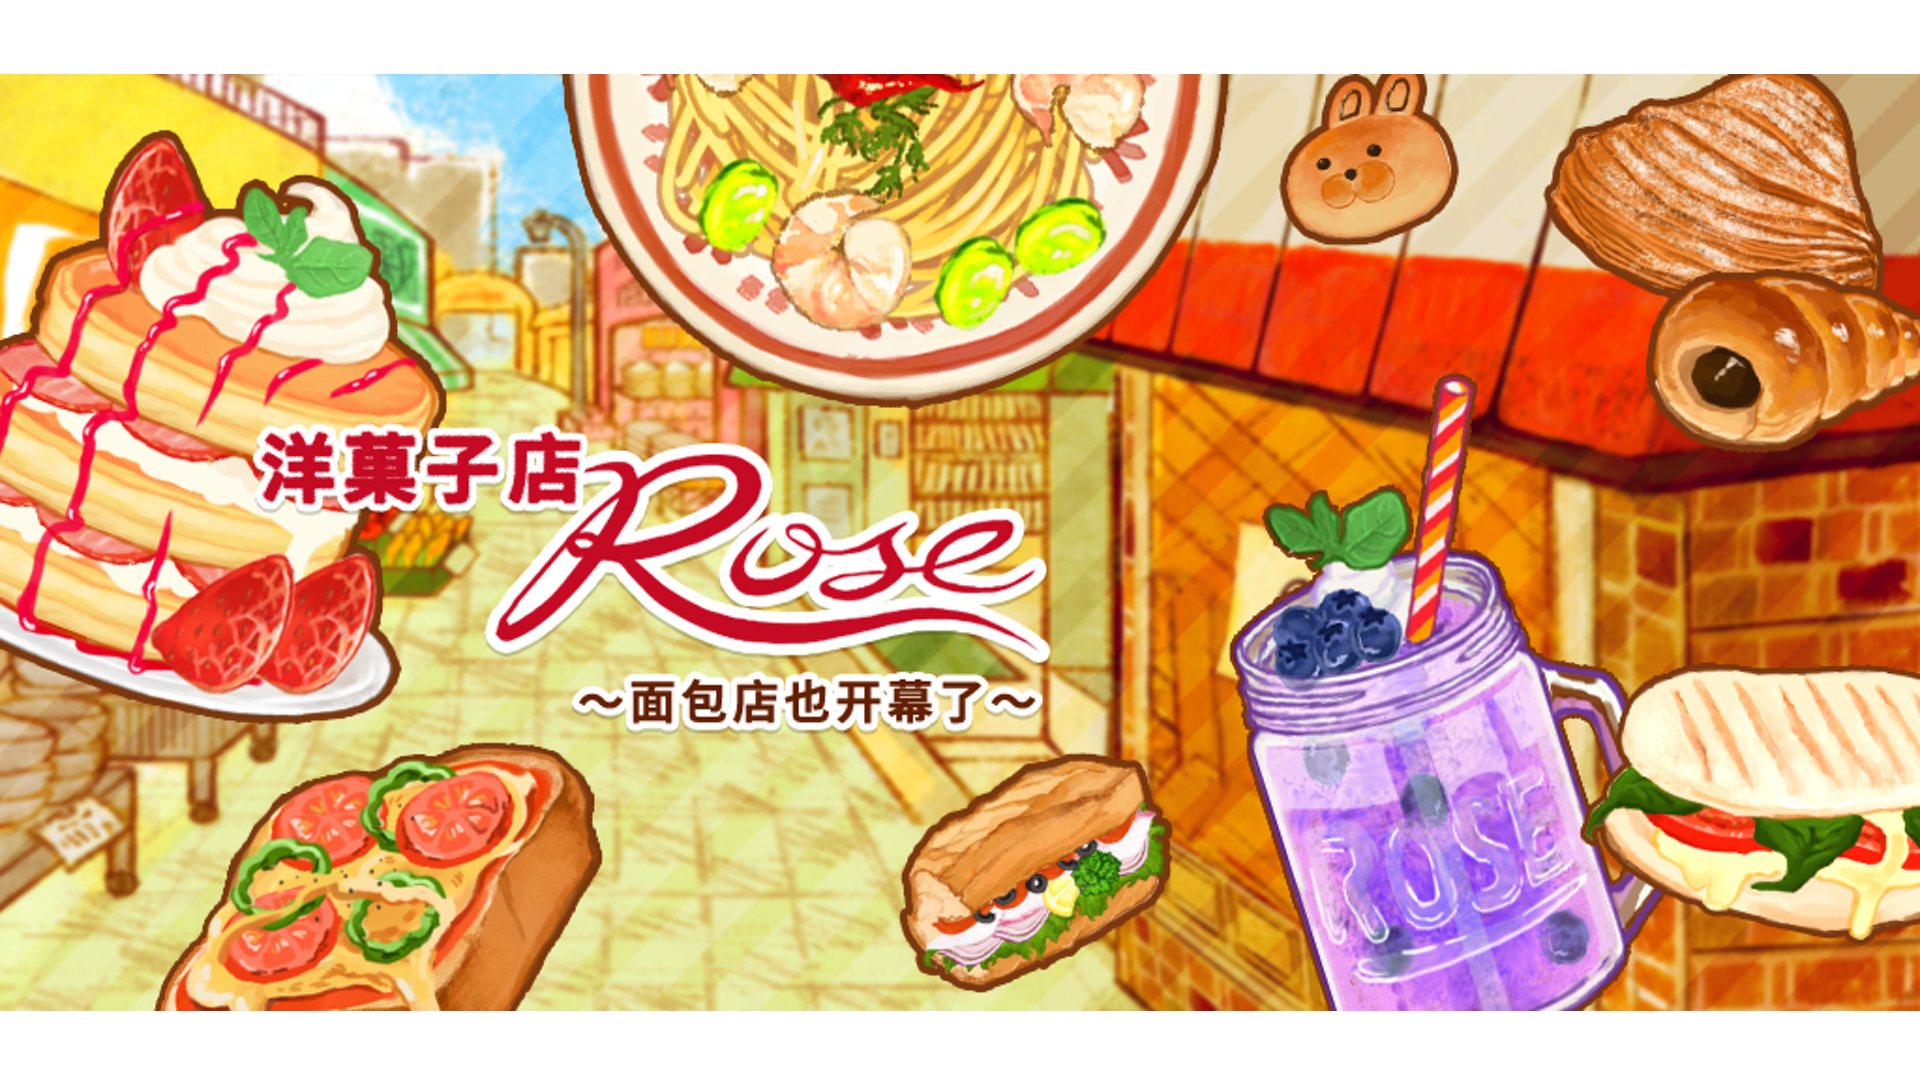 洋果子店rose食譜攻略 No.1137-1144